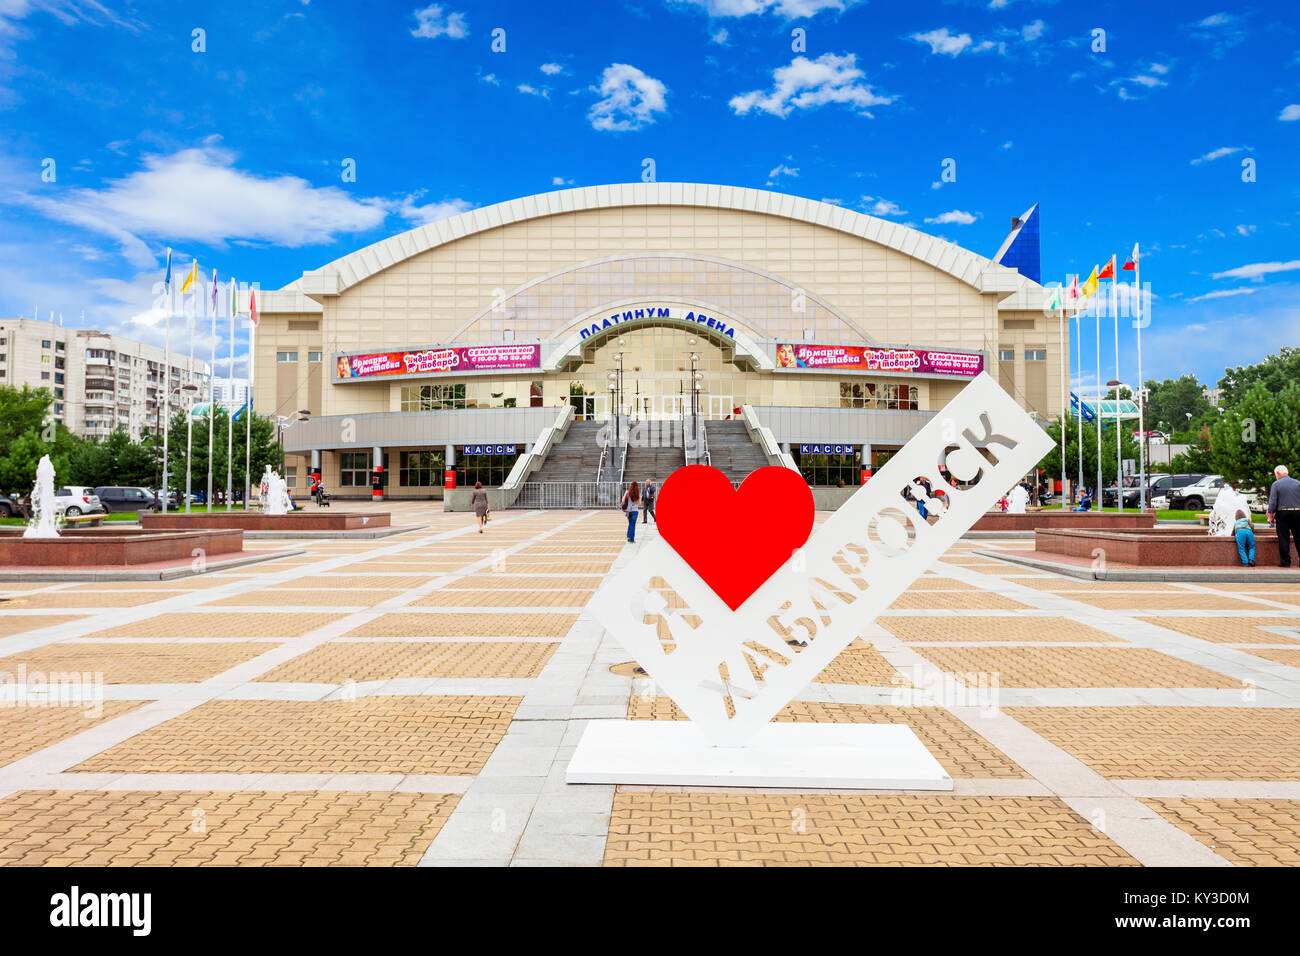 Chabarowsk, Russland - Juli 16, 2016: Platin Arena ist ein indoor Sport Arena in Chabarowsk, Russland. Stockfoto